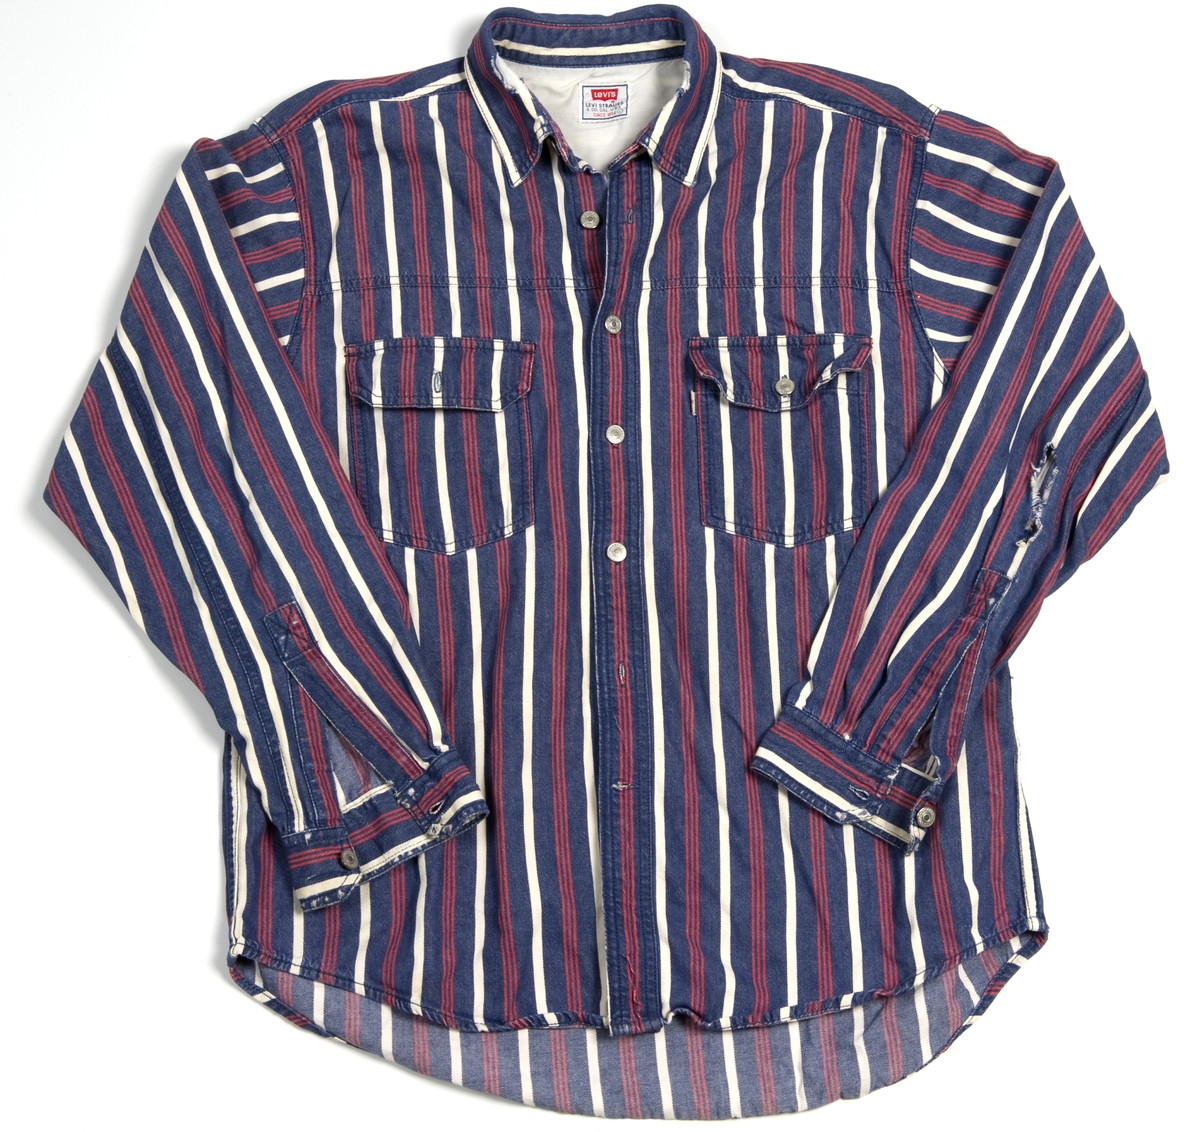 Levis-skjorte med blå, røde og hvite striper, str. L.
Det er hull i høyre erme og i kragen.